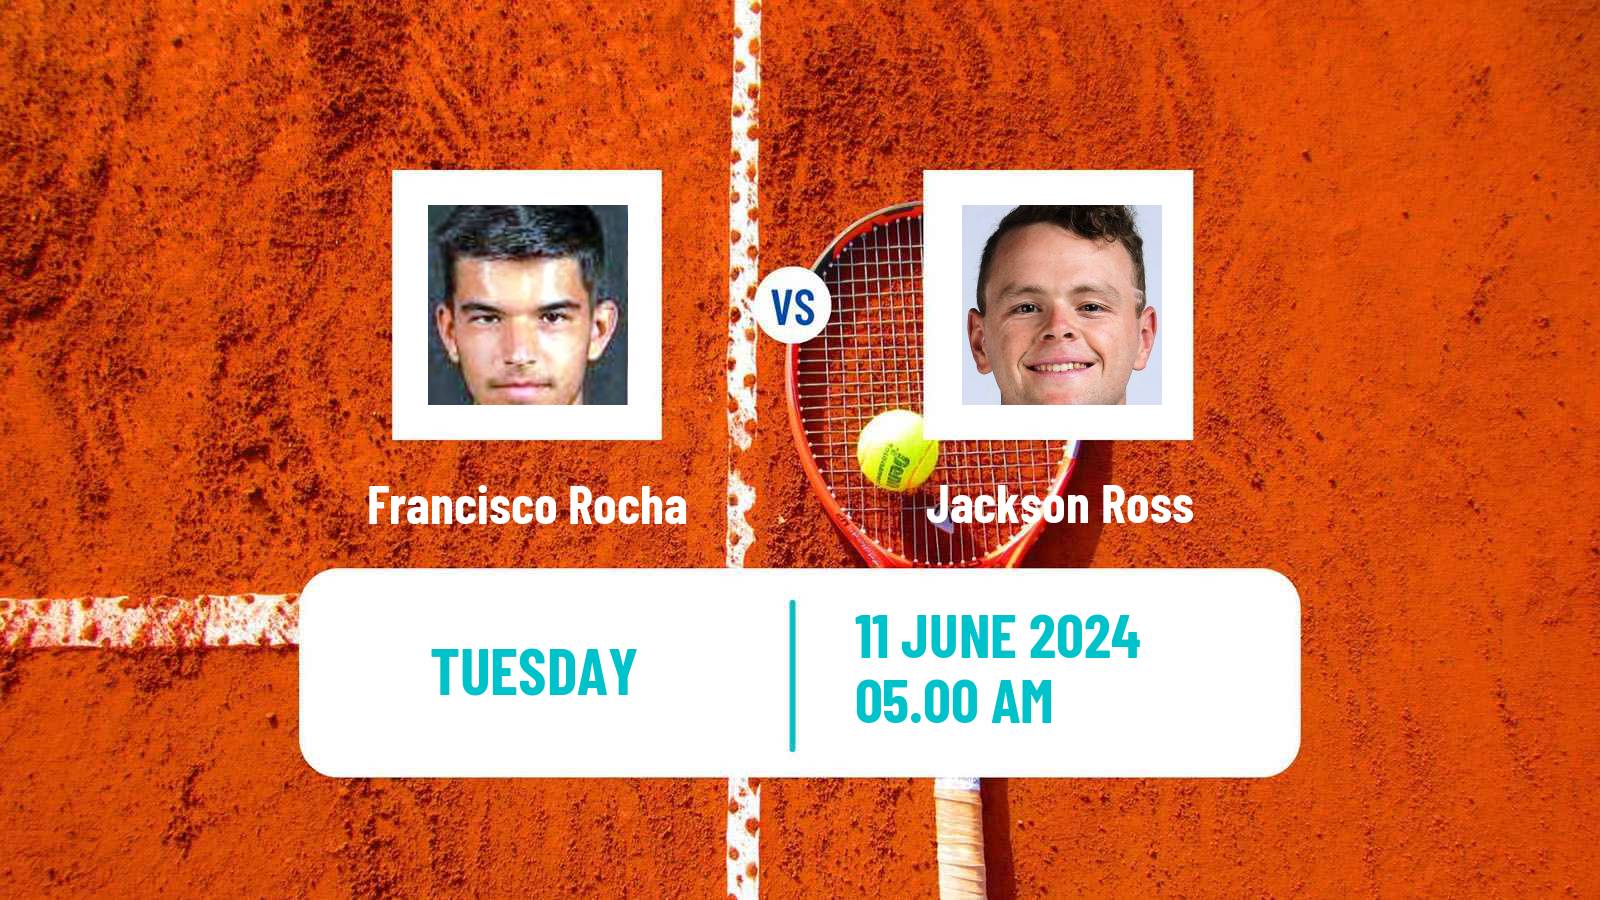 Tennis ITF M25 Elvas Men Francisco Rocha - Jackson Ross